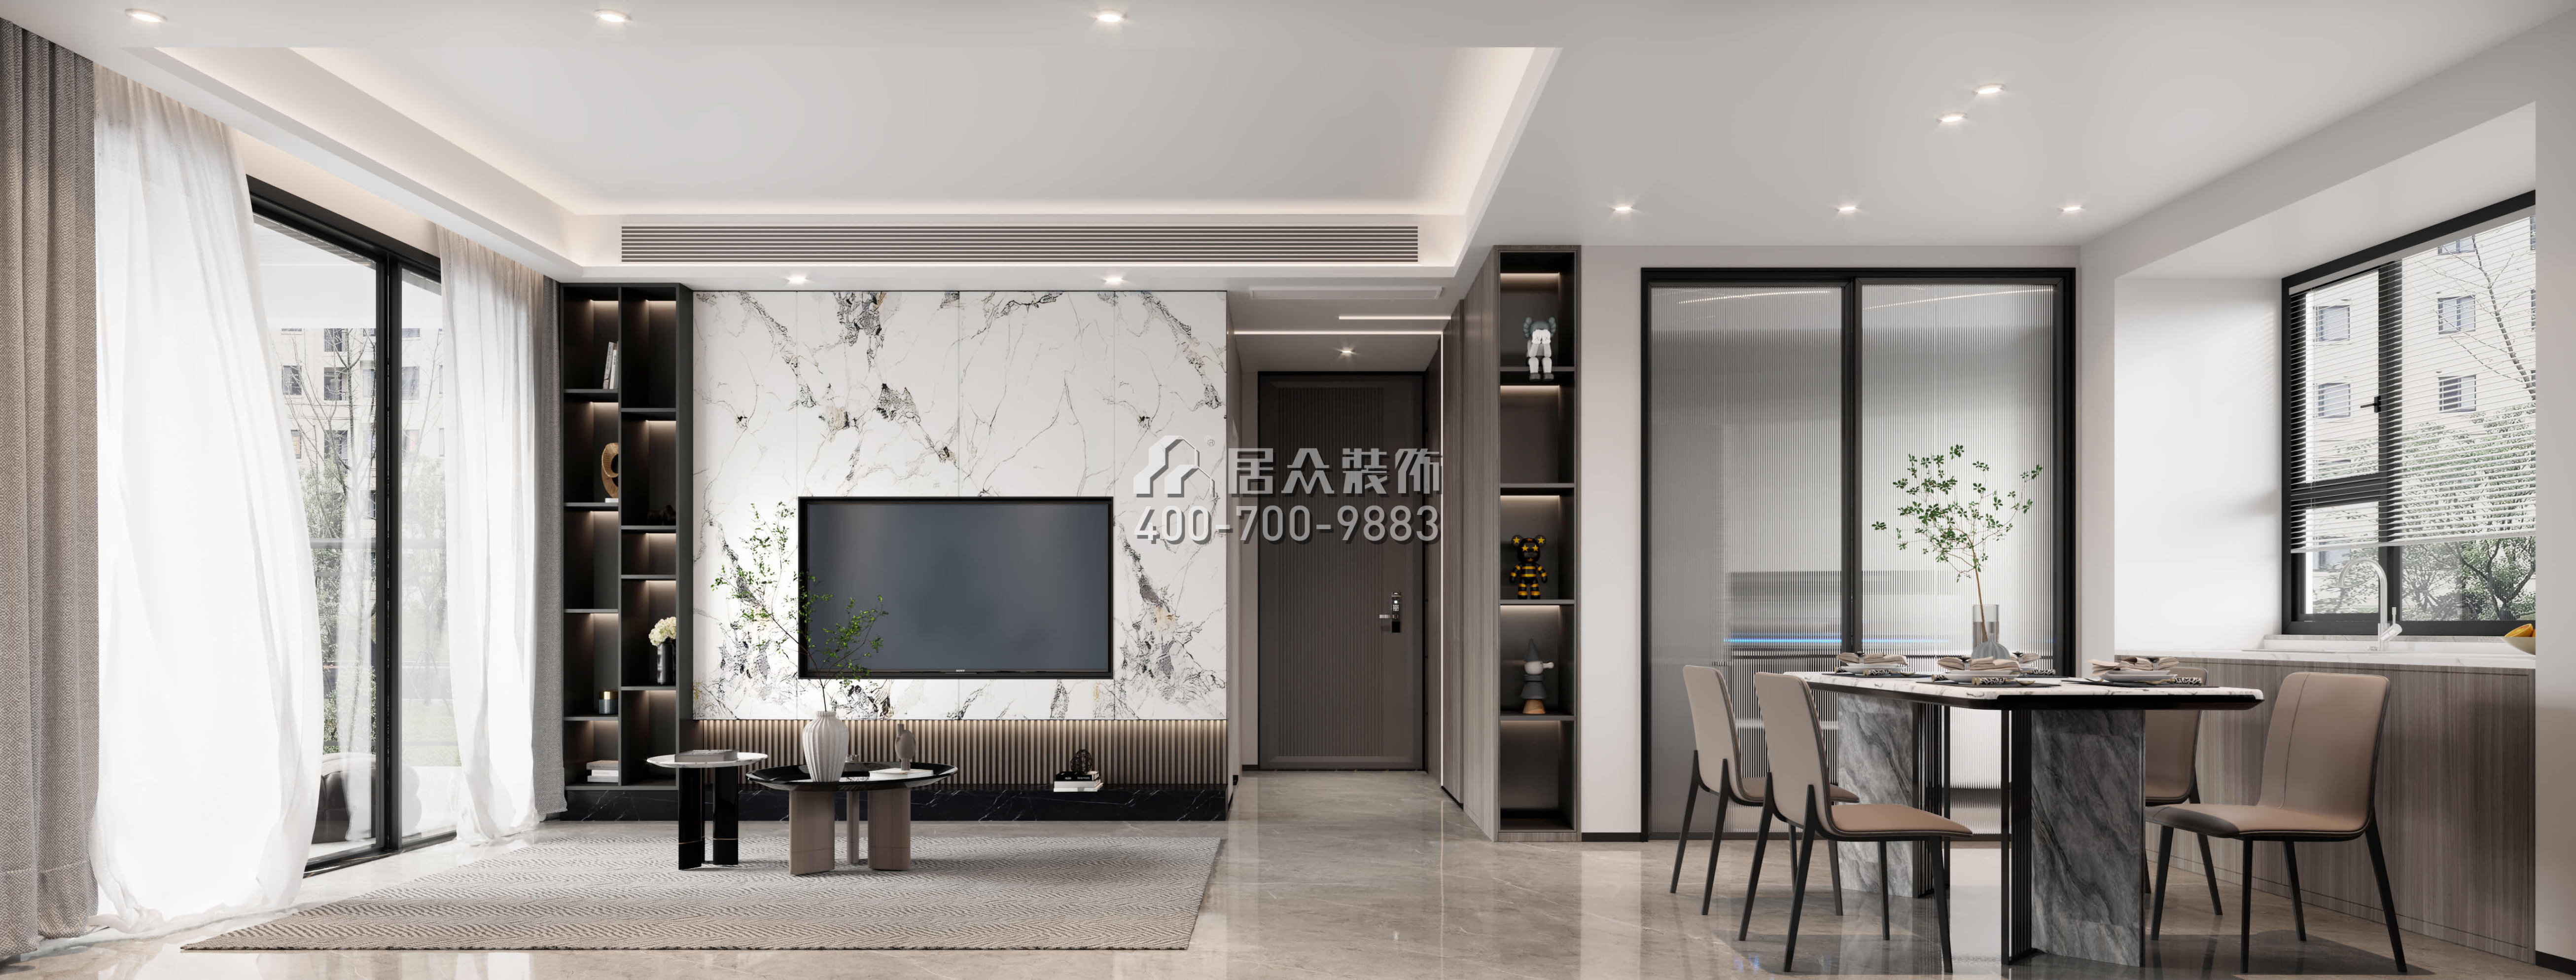 龍光玖譽府90平方米現代簡約風格平層戶型客廳裝修效果圖